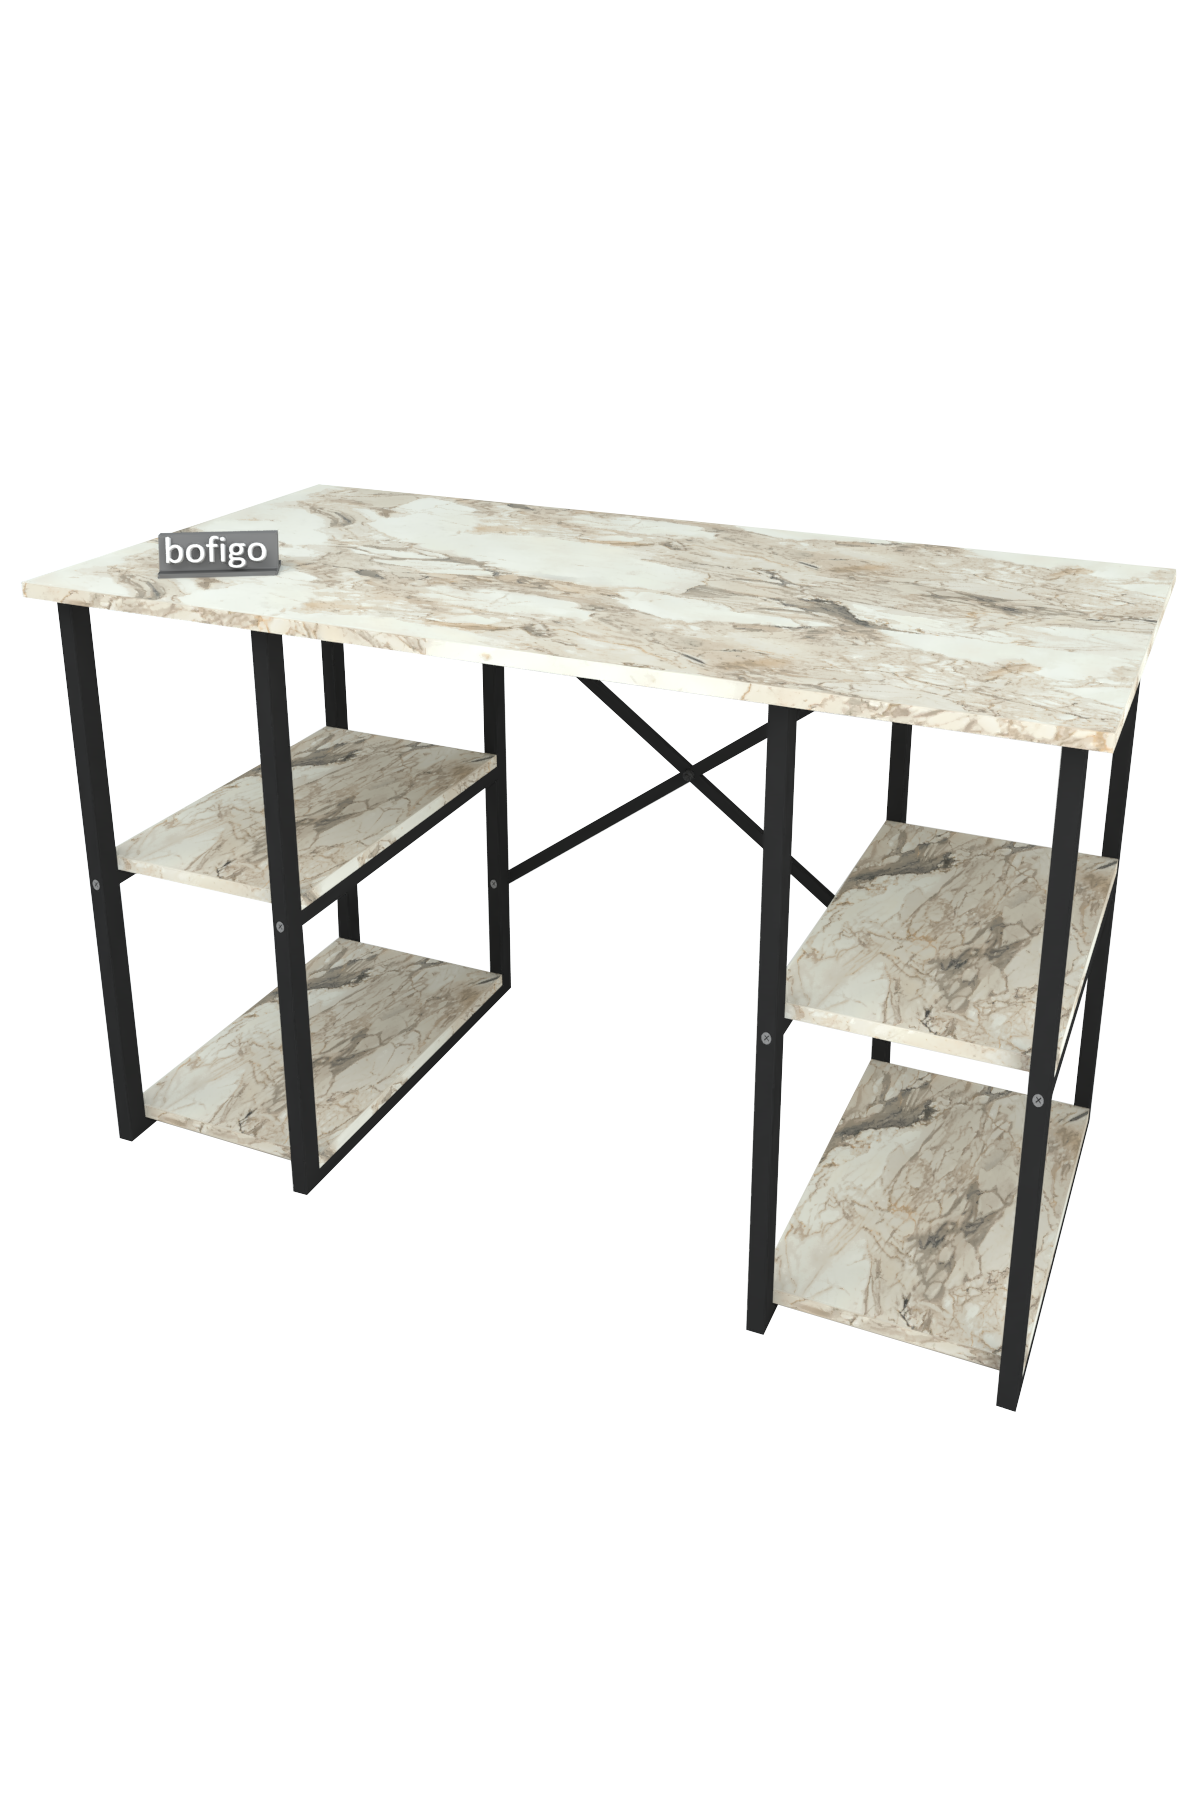 Bofigo 4 Shelf Study Desk 60x120 cm Efes